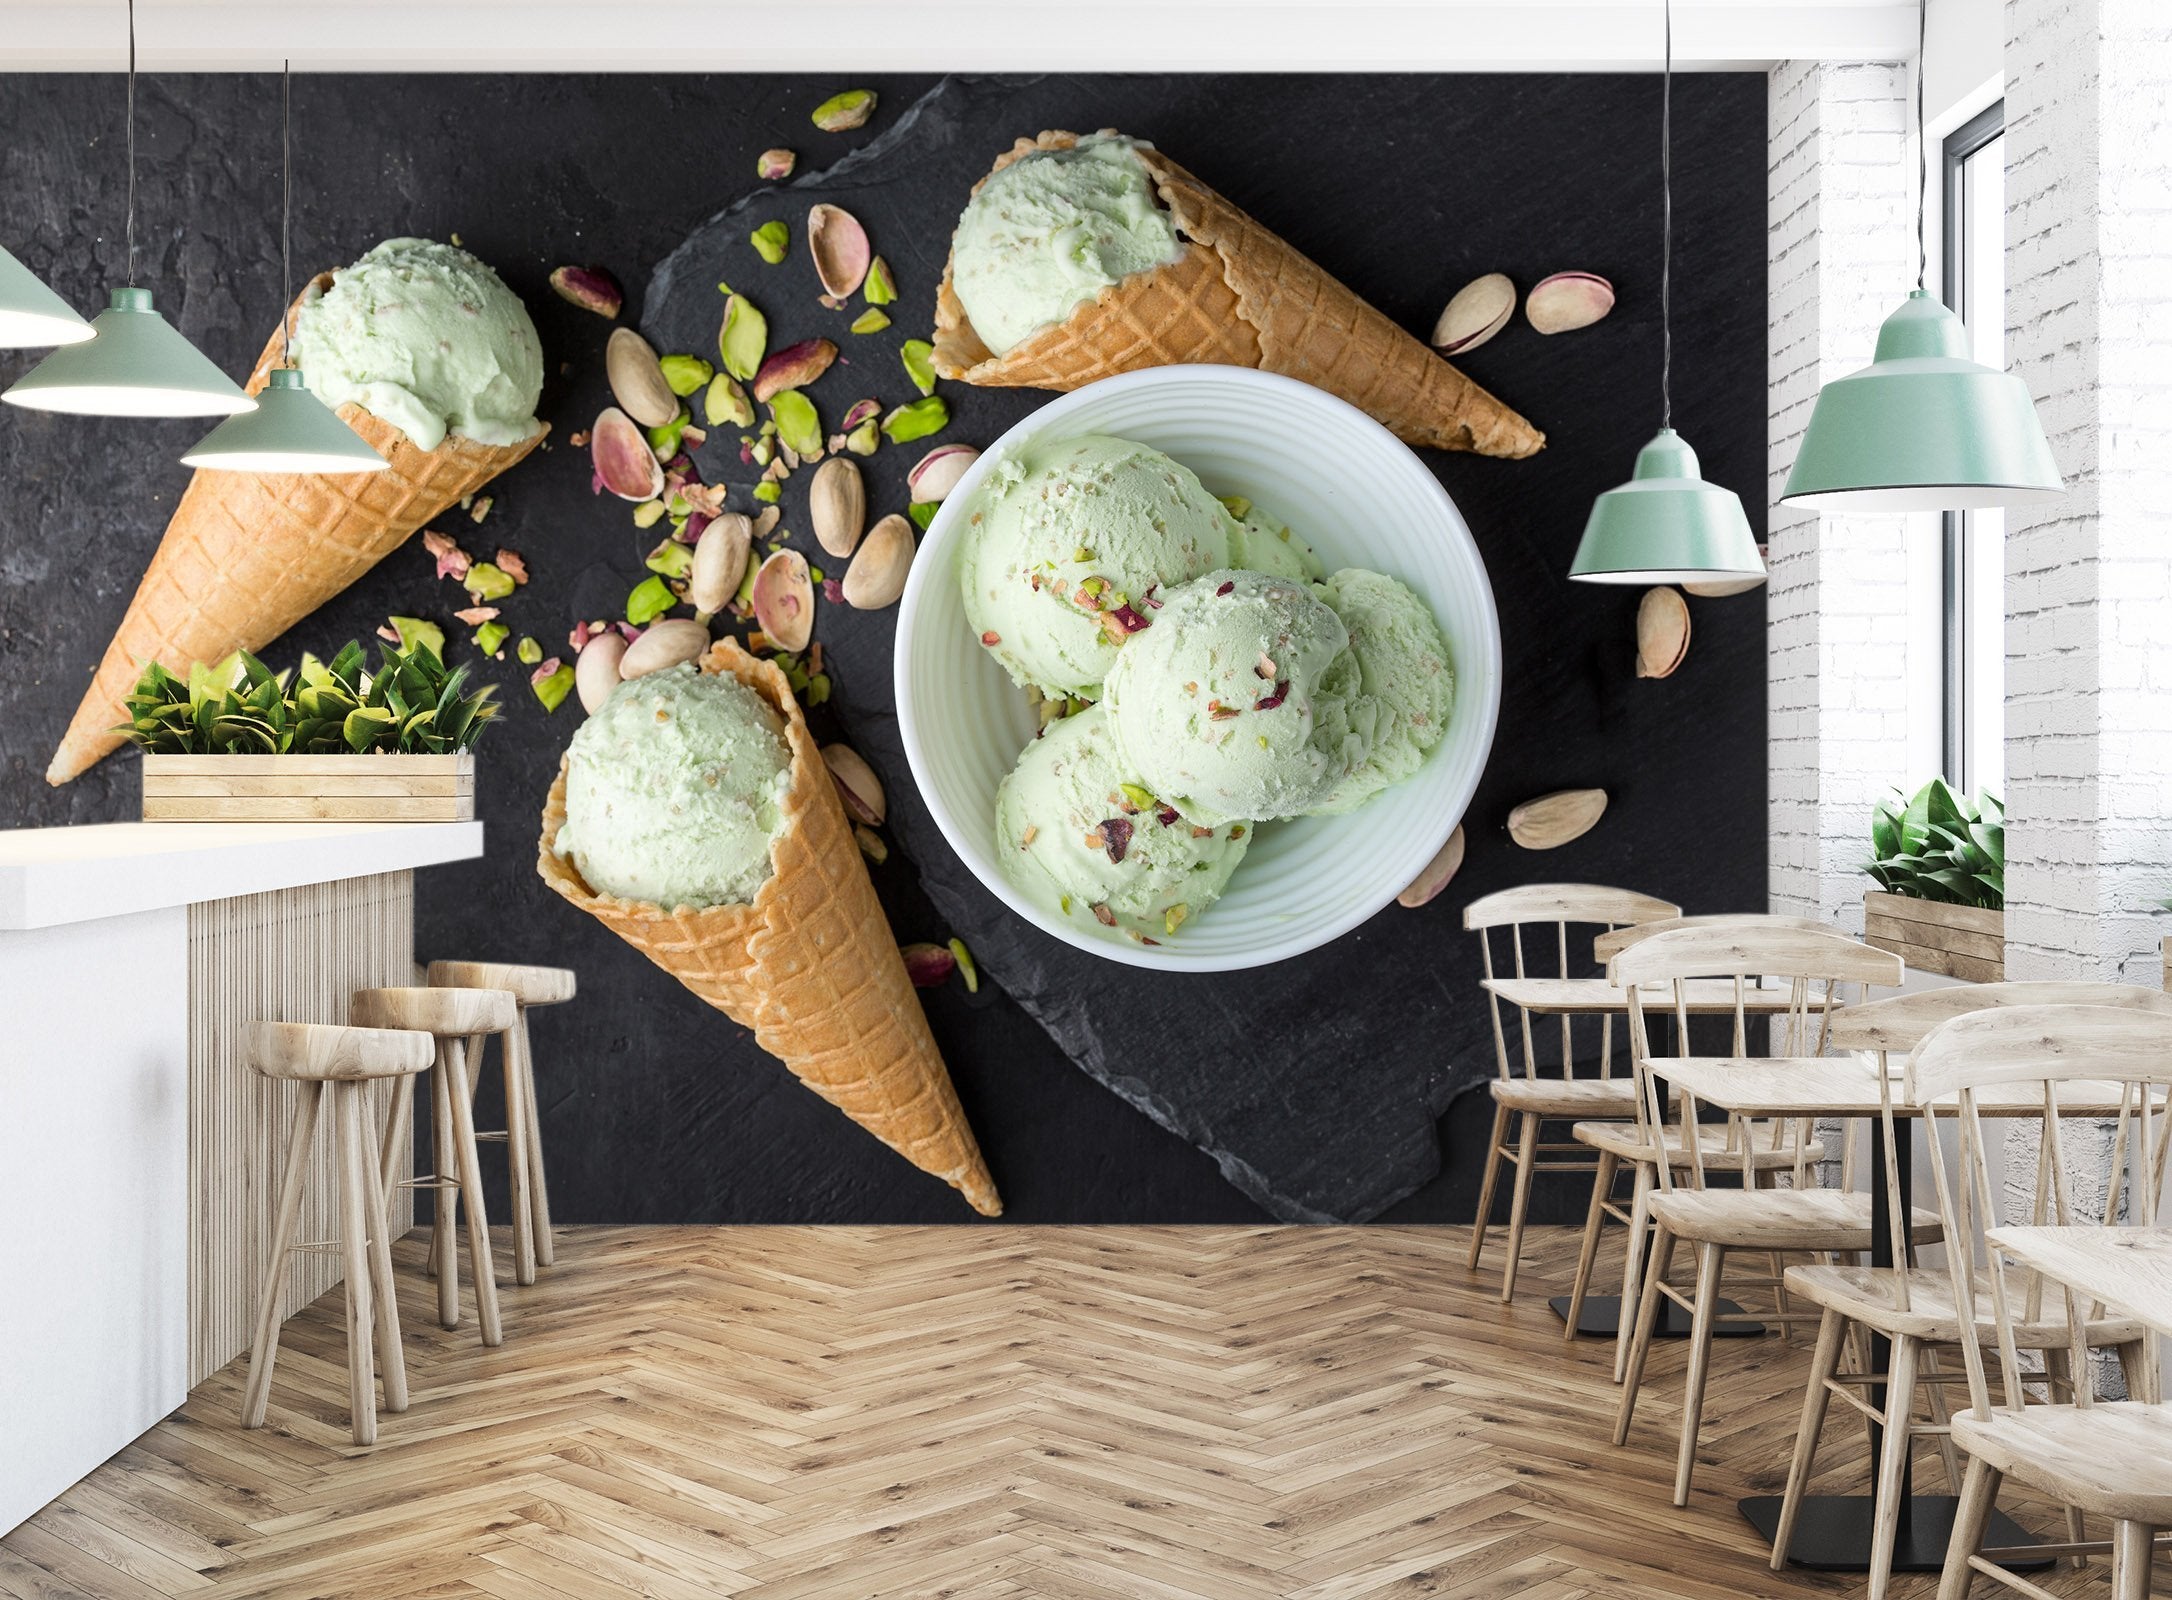 3D Pistachio Ice Cream 187 Wallpaper AJ Wallpaper 2 